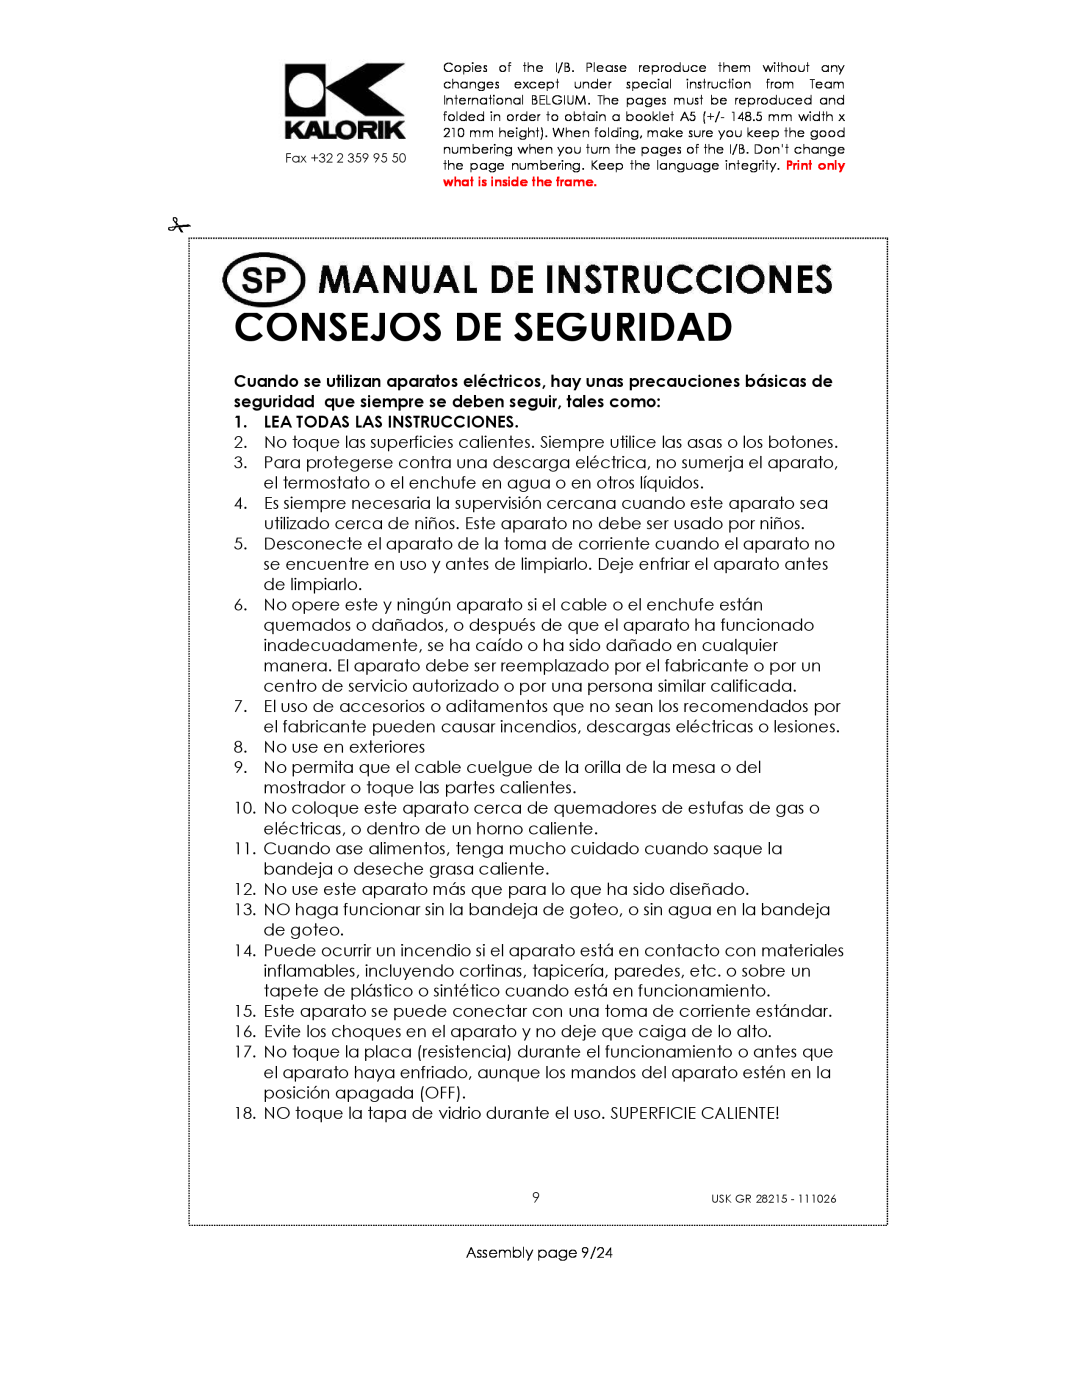 Kalorik USK GR 28215 manual Consejos De Seguridad, Lea Todas Las Instrucciones 